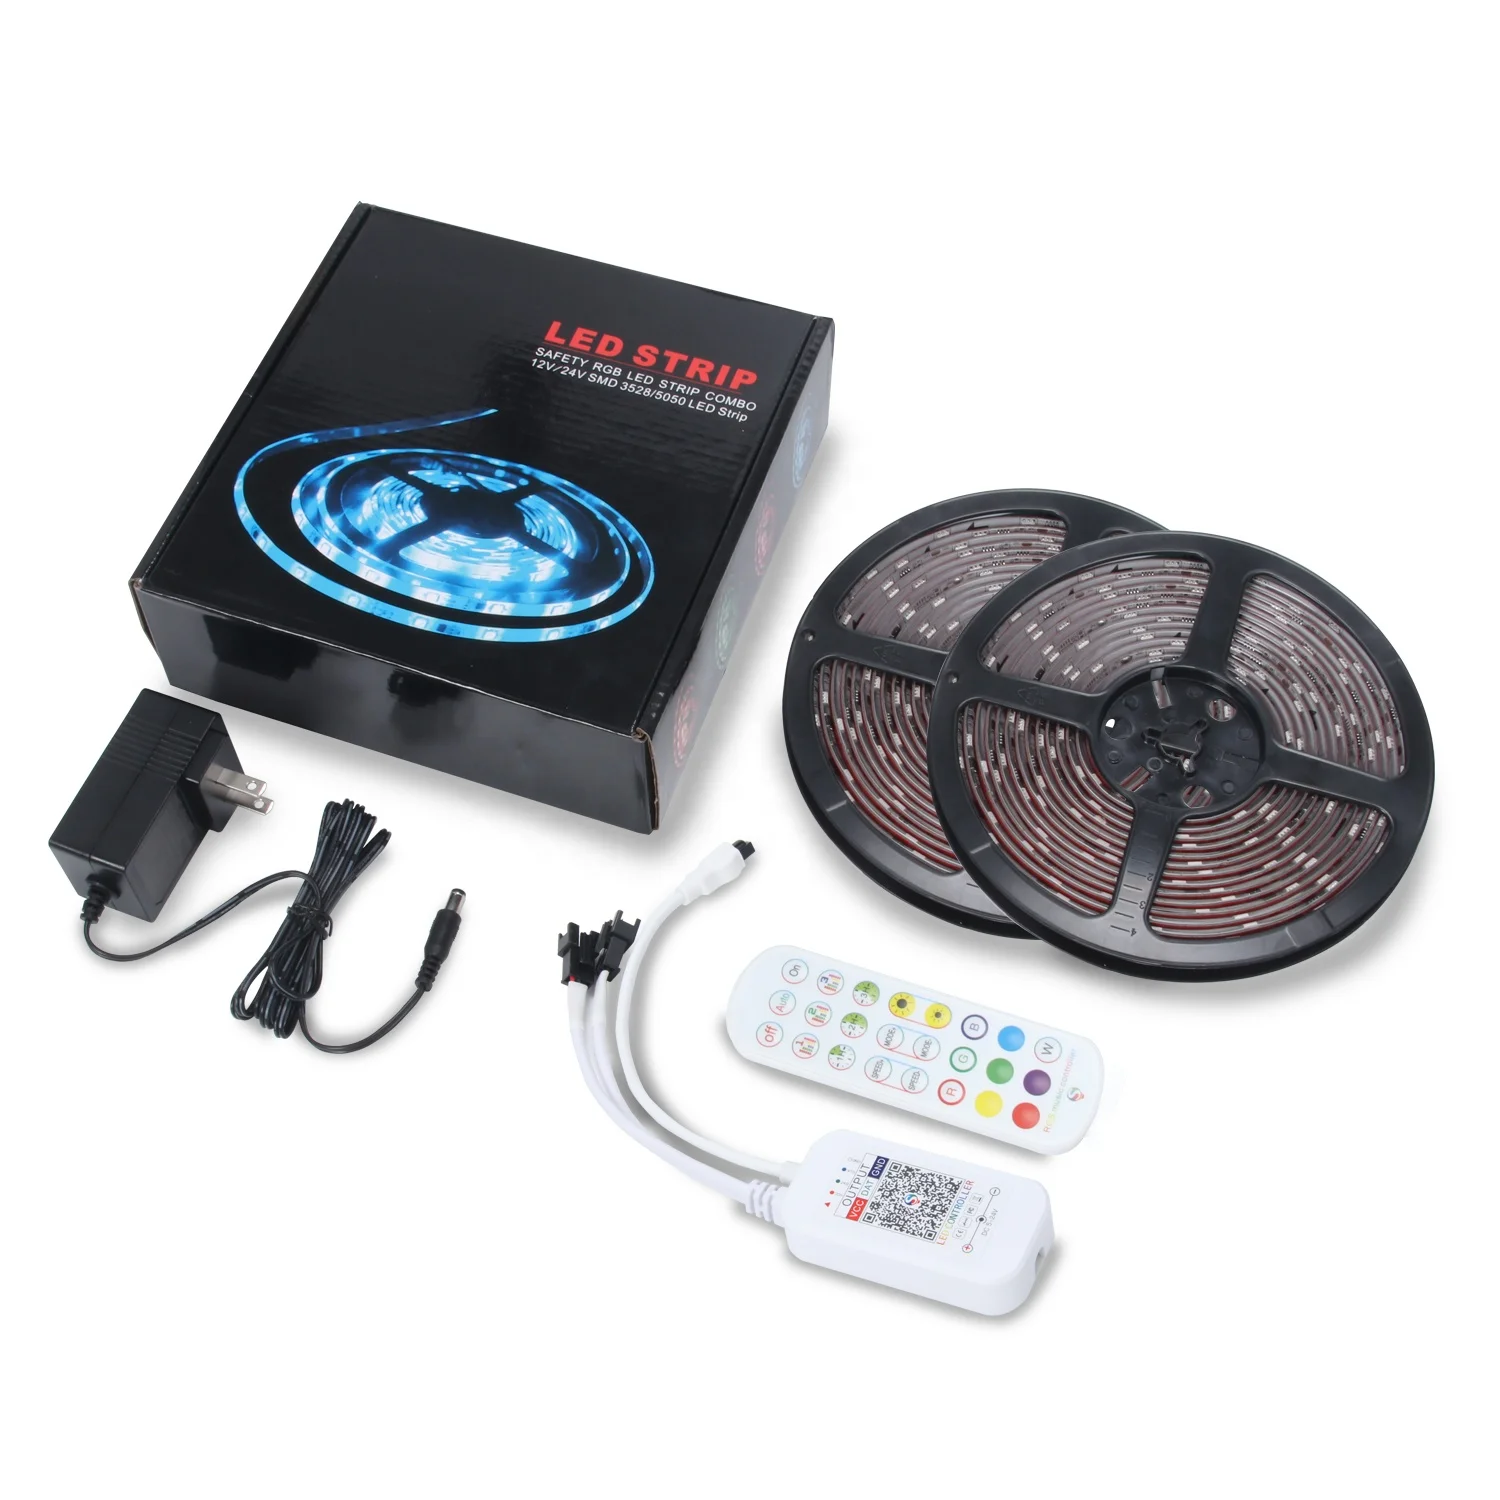 addressable remote control cintas dream color magic rgb 5050 smd music sync digital smart tira luces led strip light